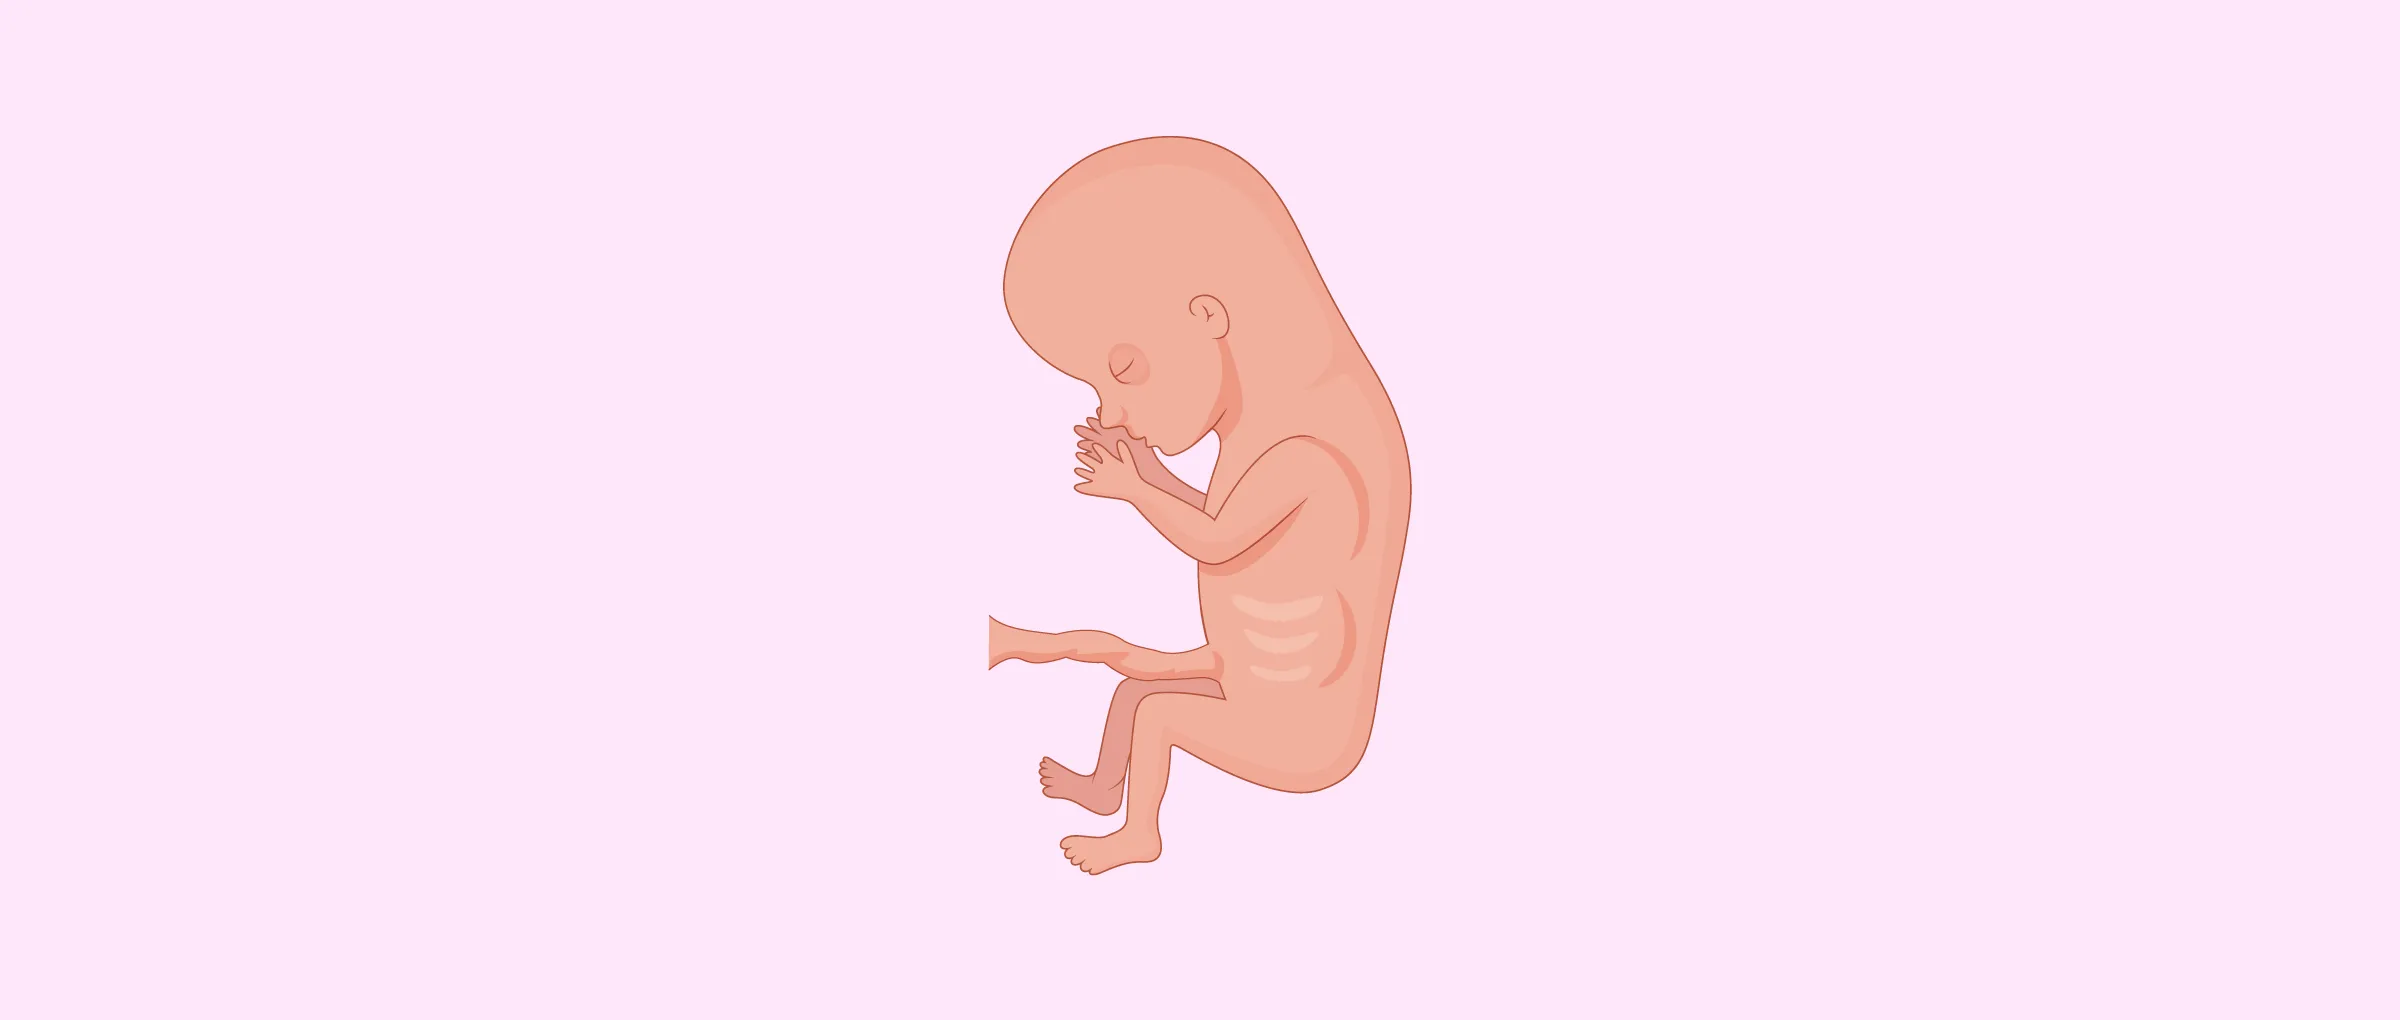 3 meses de embarazo 3 meses de embarazo – Reproducción Asistida ORG